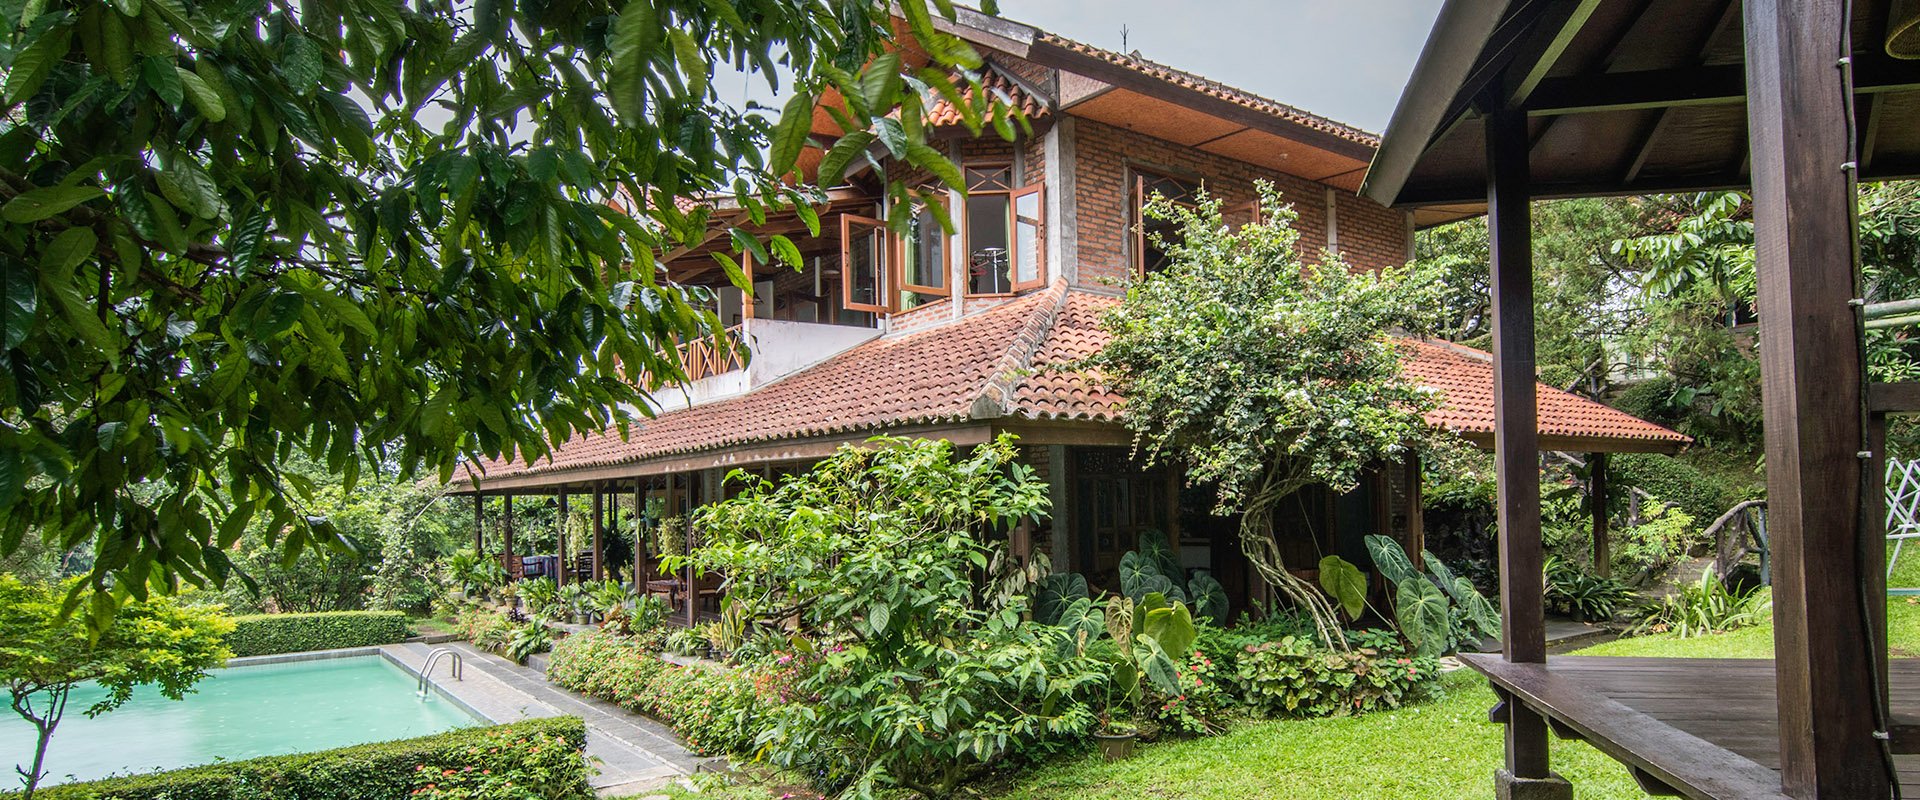 Villa Untuk 20 30 Orang Di Bogor Mahasiswa Komunitas Pasti Suka 6 Villa Ini